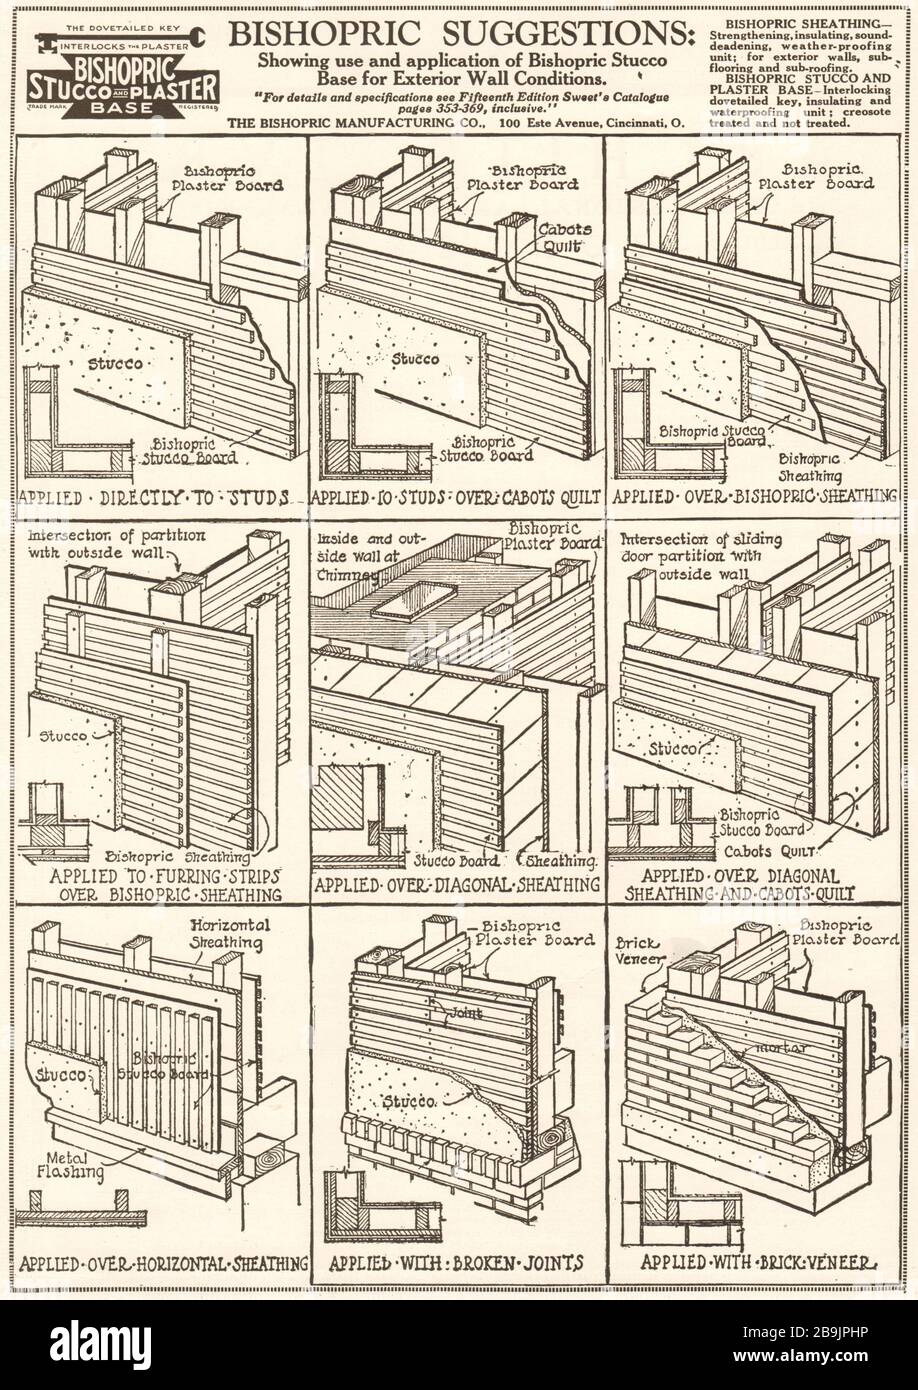 Suggerimenti del vescovato: Mostrare l'uso e l'applicazione dello stucco del vescovato. Stucco vescovile e base in gesso (1921) Foto Stock